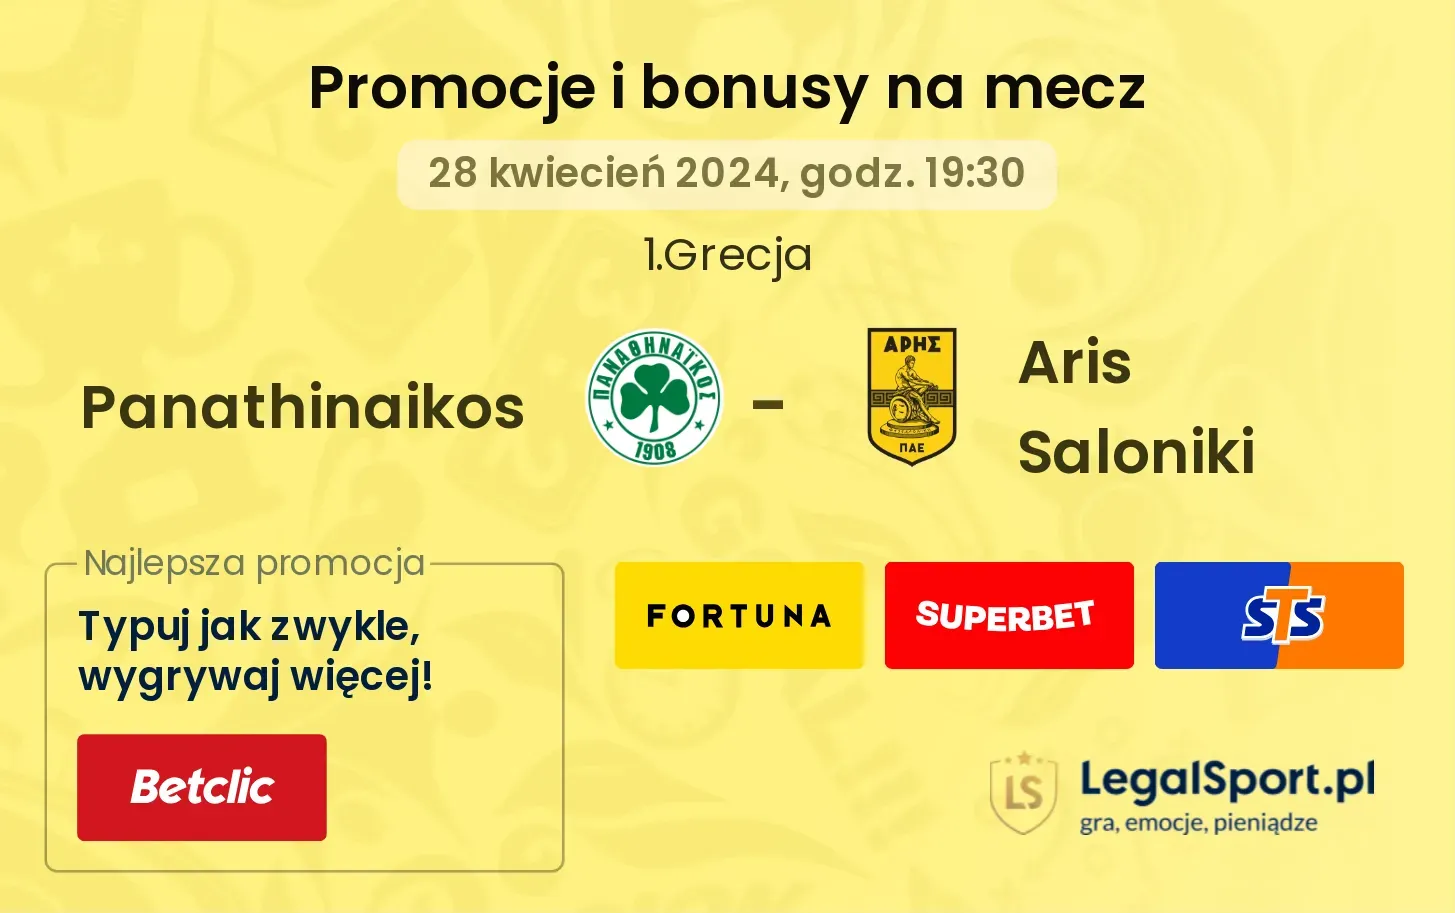 Panathinaikos - Aris Saloniki promocje bonusy na mecz